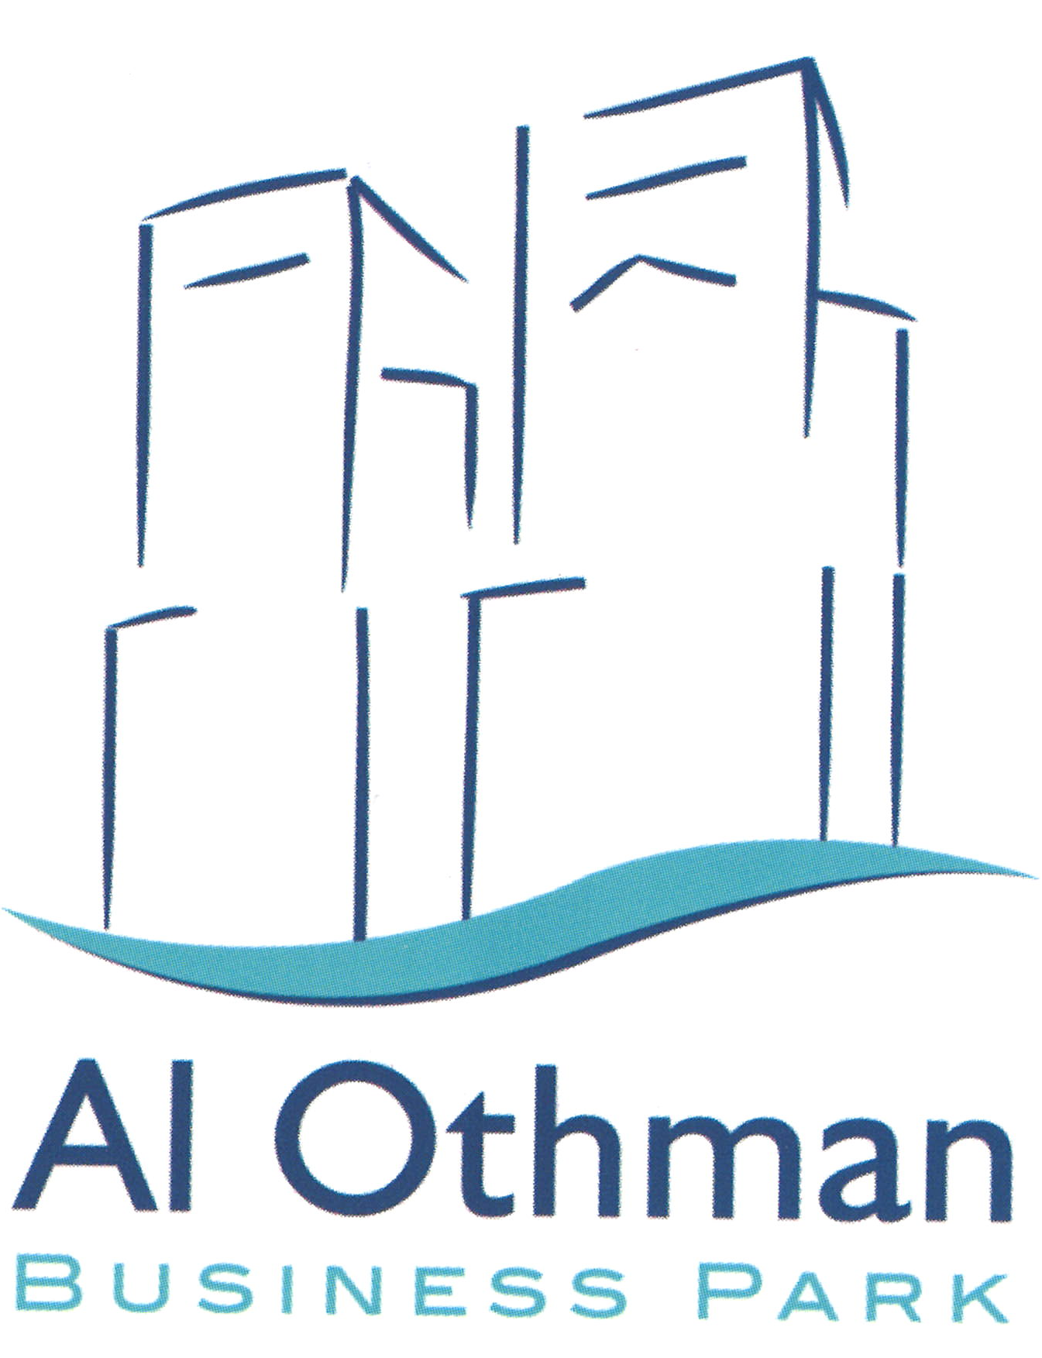 Al Othman Business Park